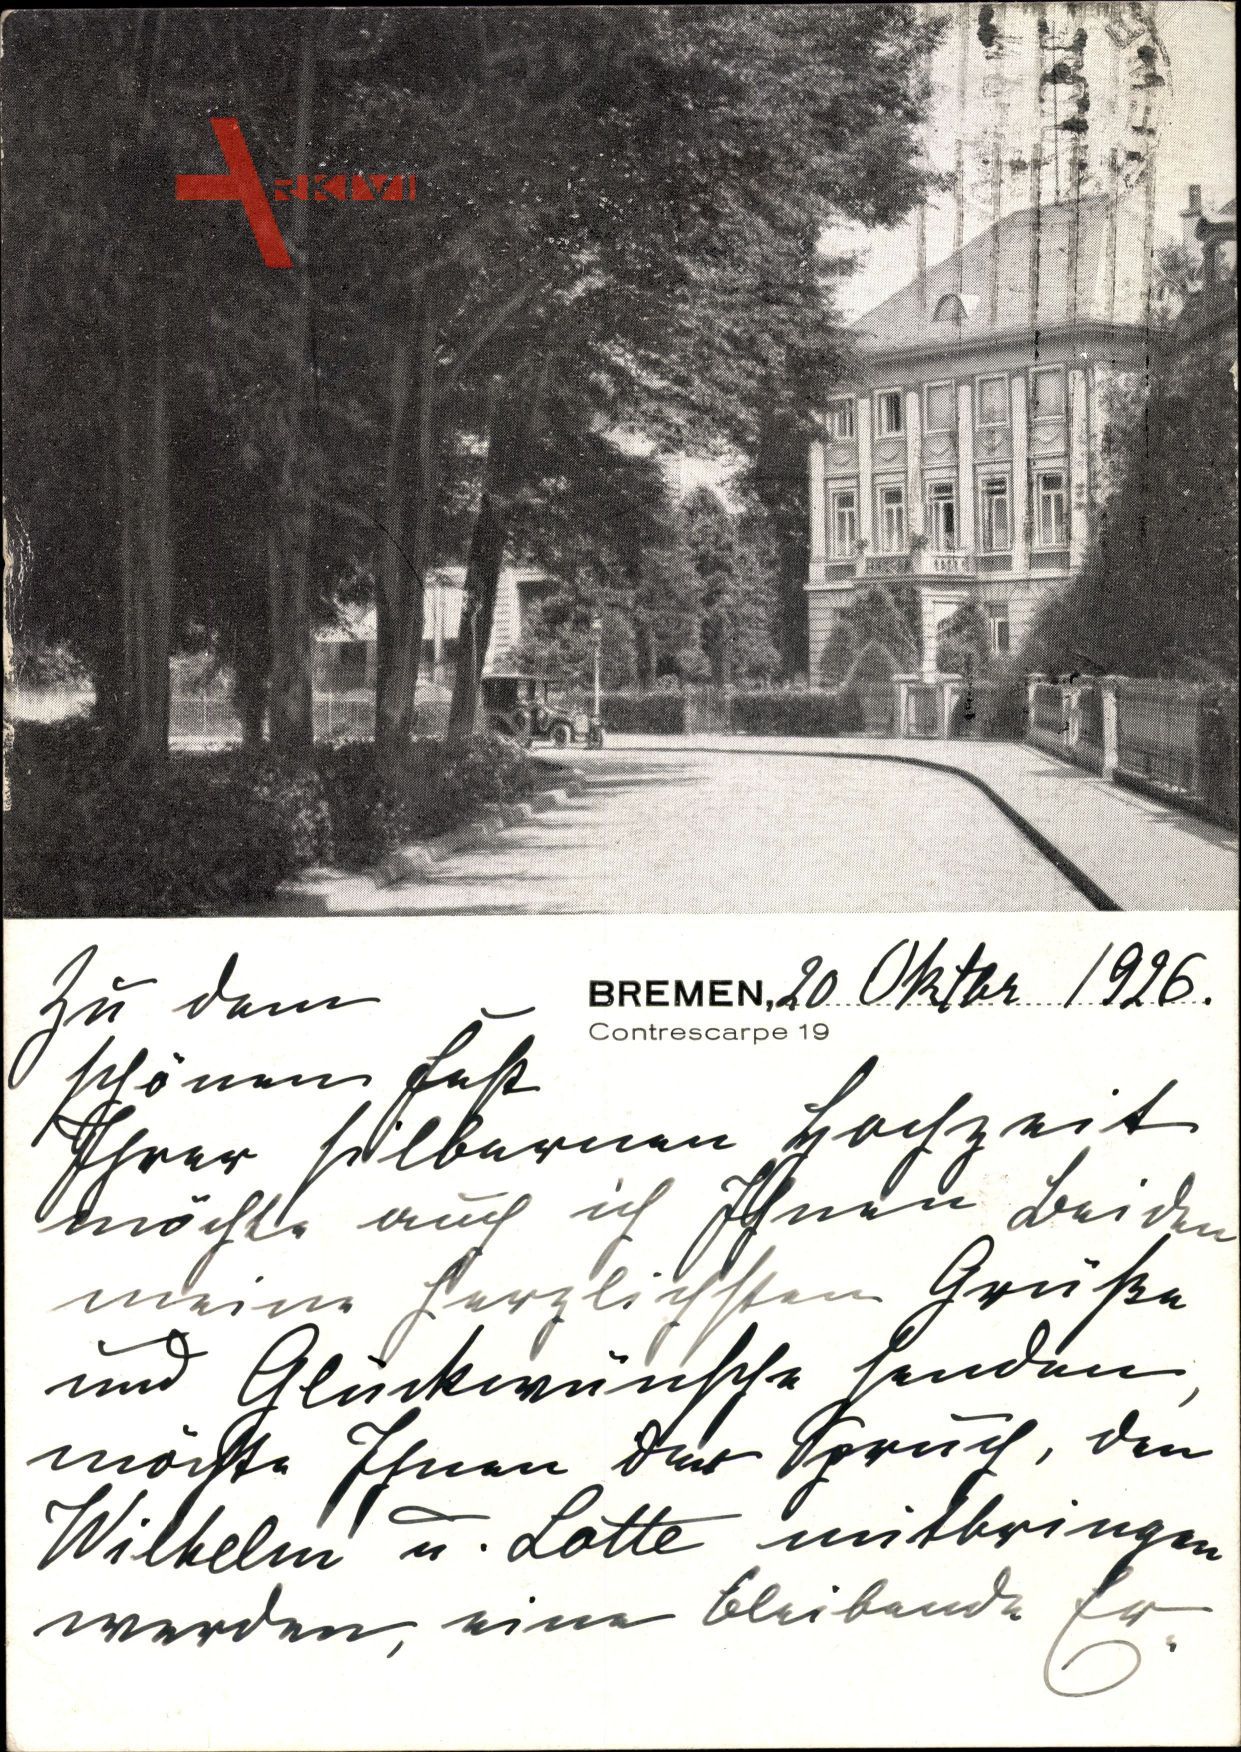 Hansestadt Bremen, Contrescarpe 19, Wohnhaus, Straßenpartie